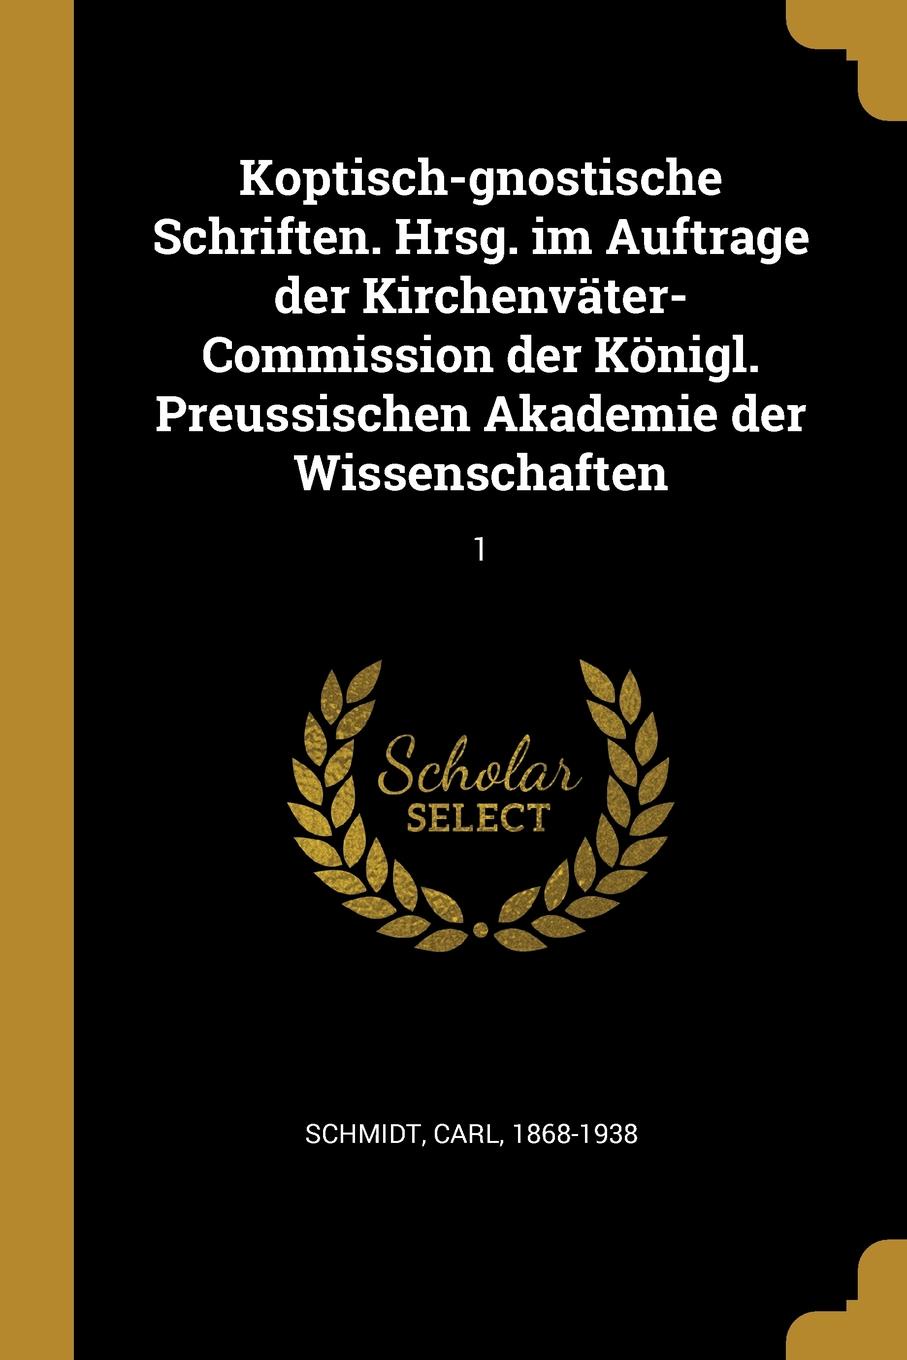 Koptisch-gnostische Schriften. Hrsg. im Auftrage der Kirchenvater-Commission der Konigl. Preussischen Akademie der Wissenschaften. 1